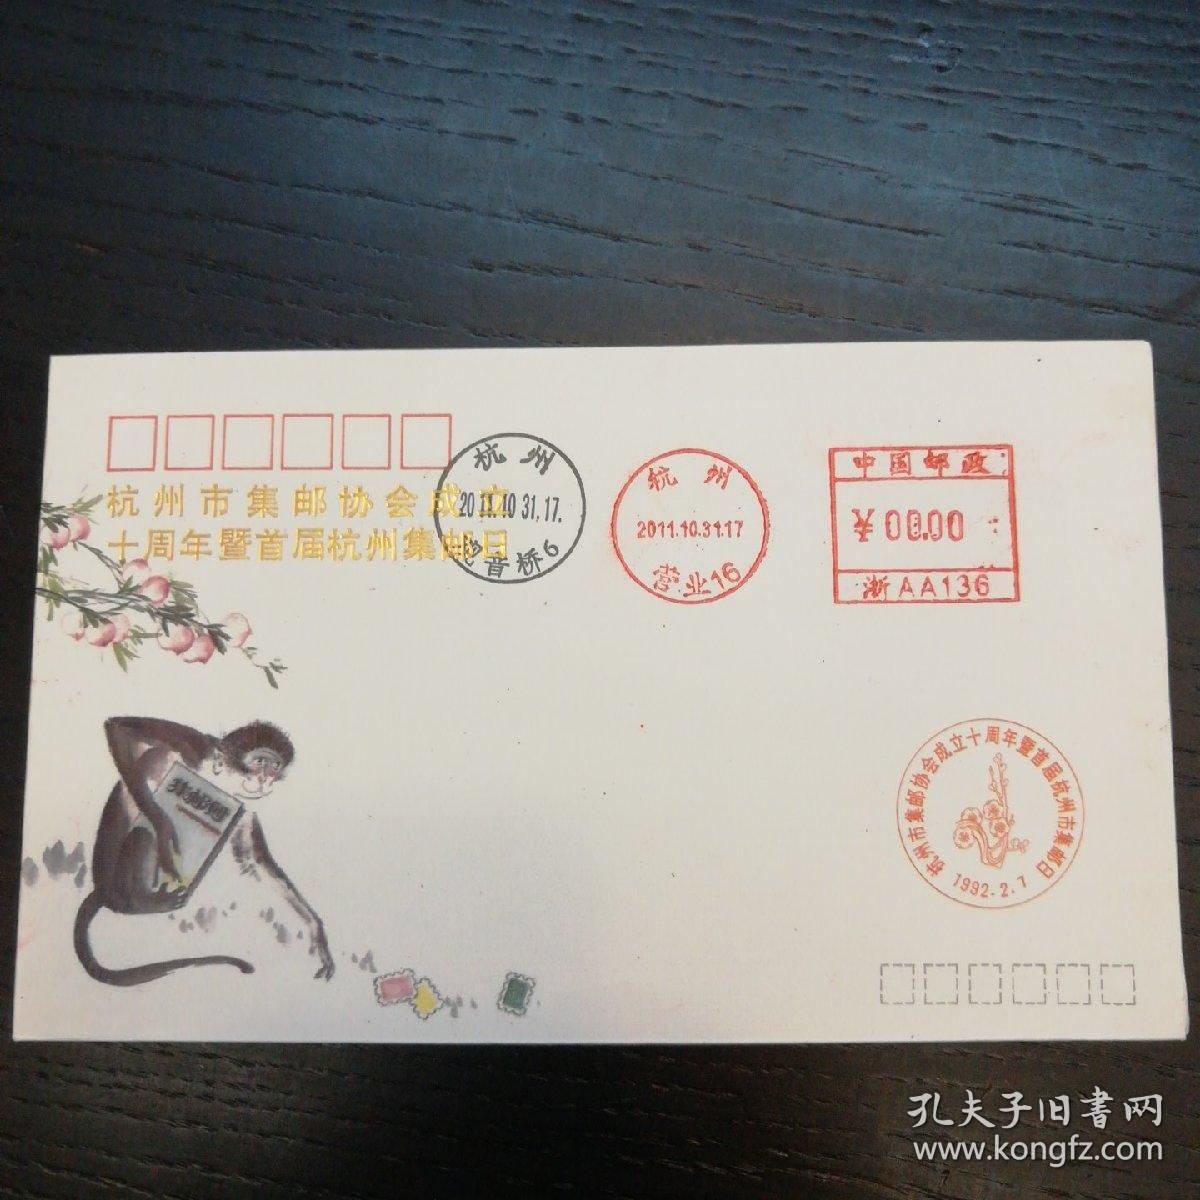 杭州市集邮协会成立十周年暨首届杭州集邮日纪念封